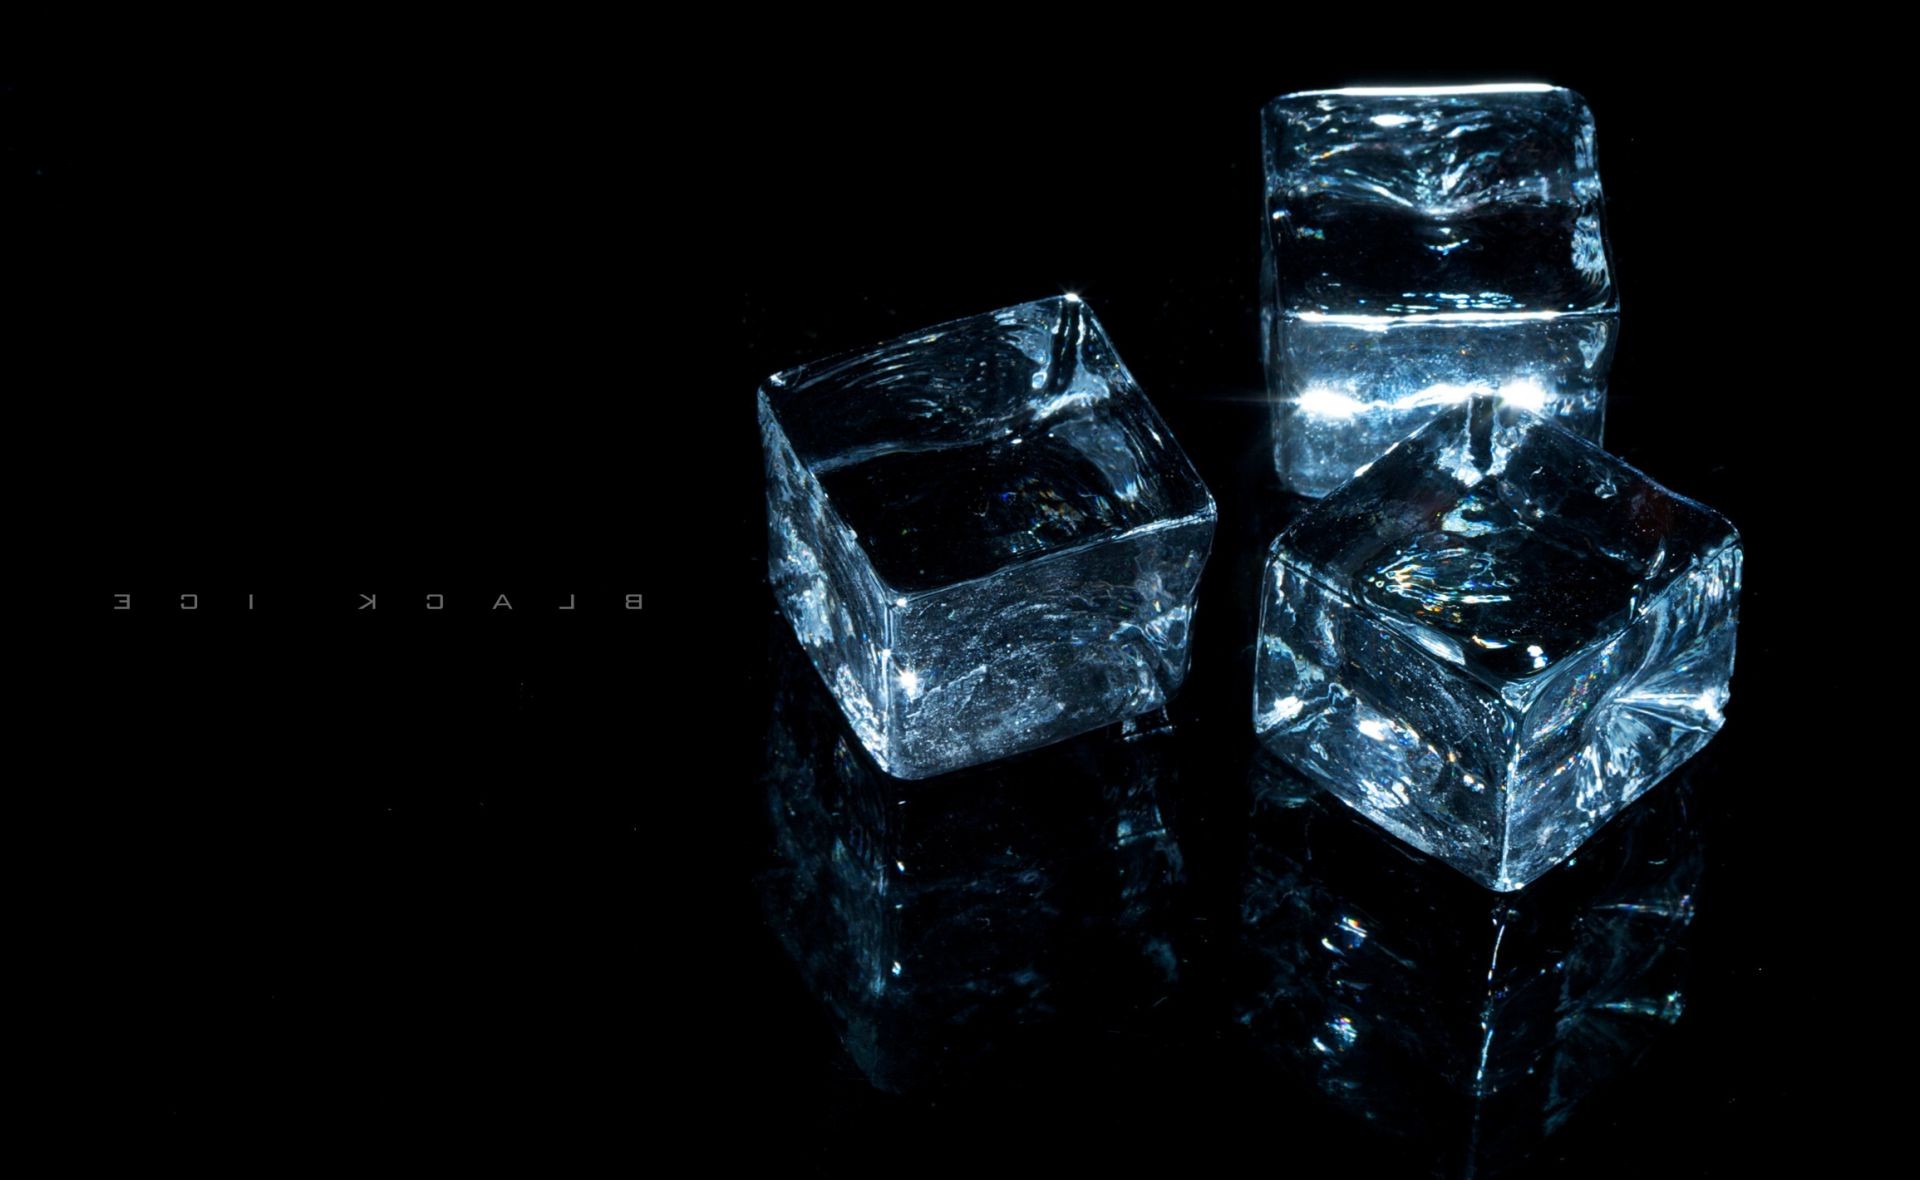 предметы куб кристалл ювелирные изделия камень драгоценные светит темный отражение площадь рабочего стола рефракция изолированные роскошные формы прозрачный свет натюрморт